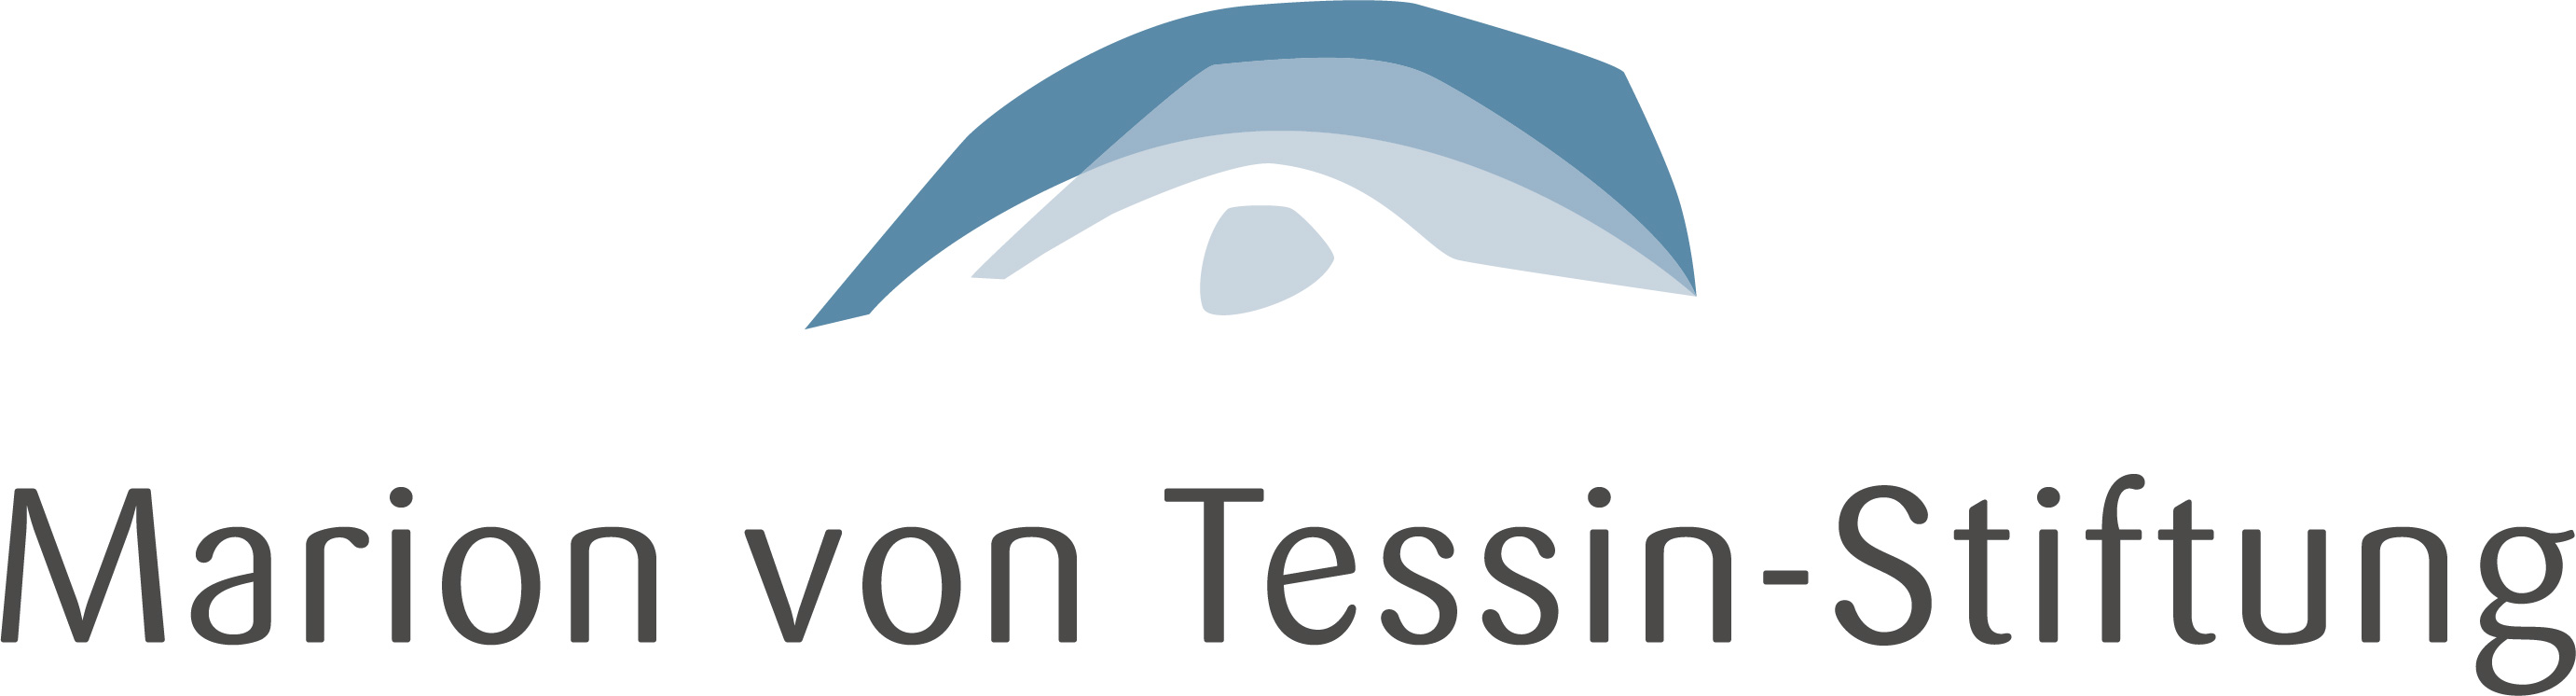 Marion von Tessin Stiftung Logo RGB